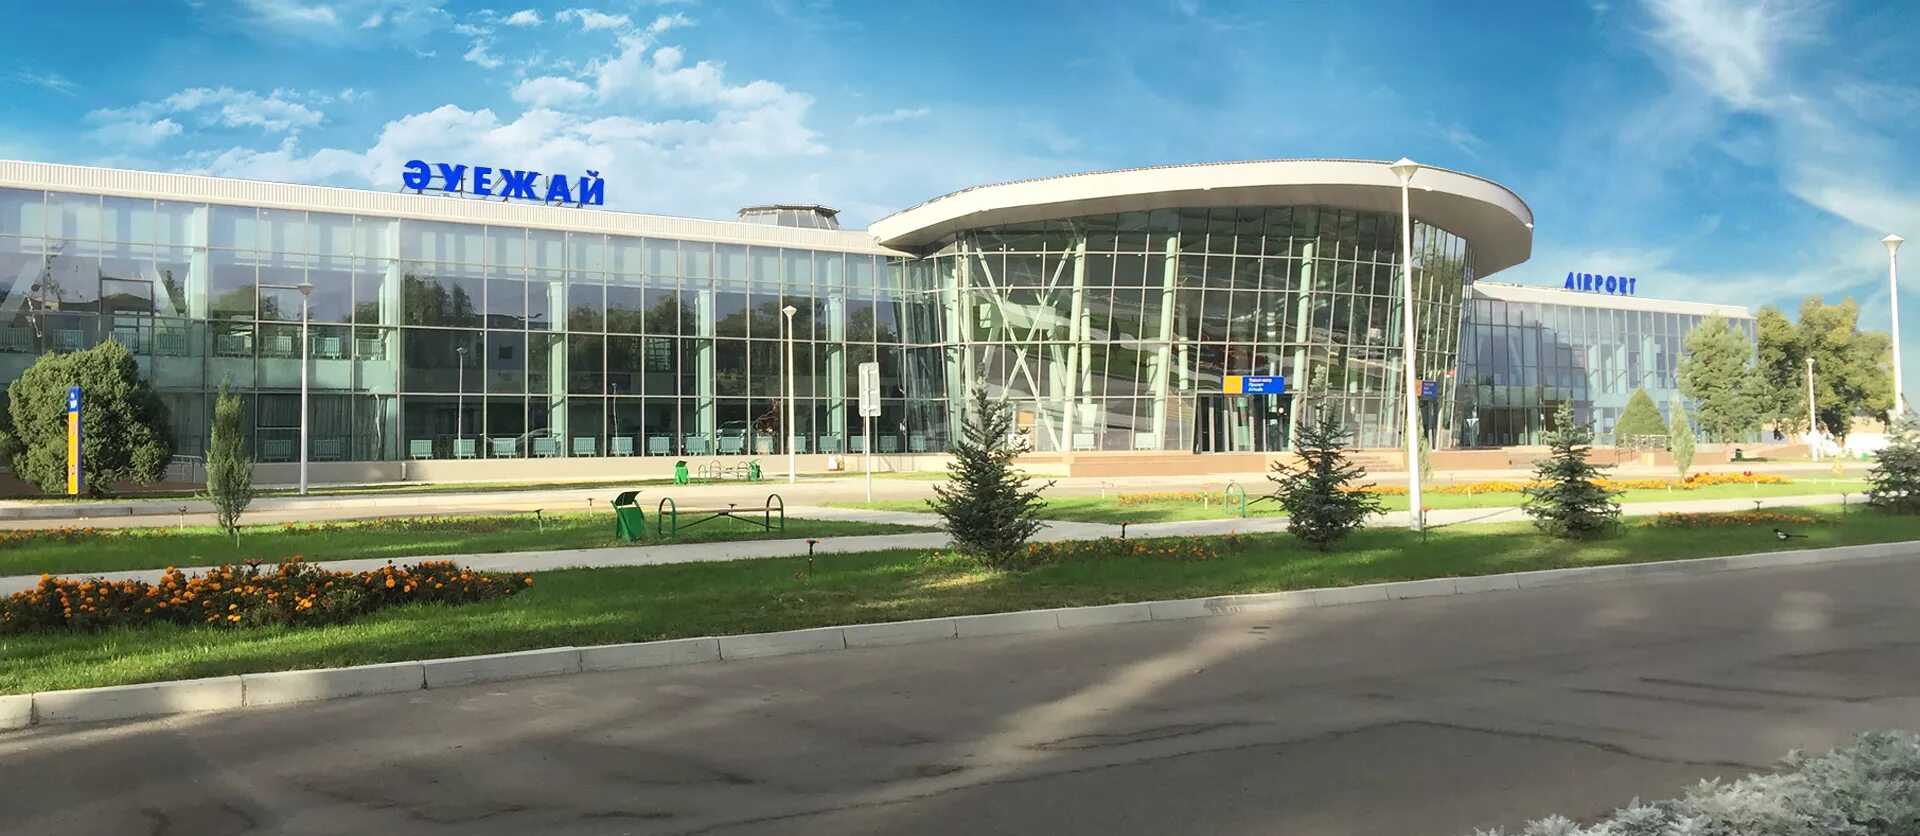 Тараз аулие ата. Аулие-Ата (аэропорт). Аэропорт Тараз. Аэропорт в Таразе Казахстан.